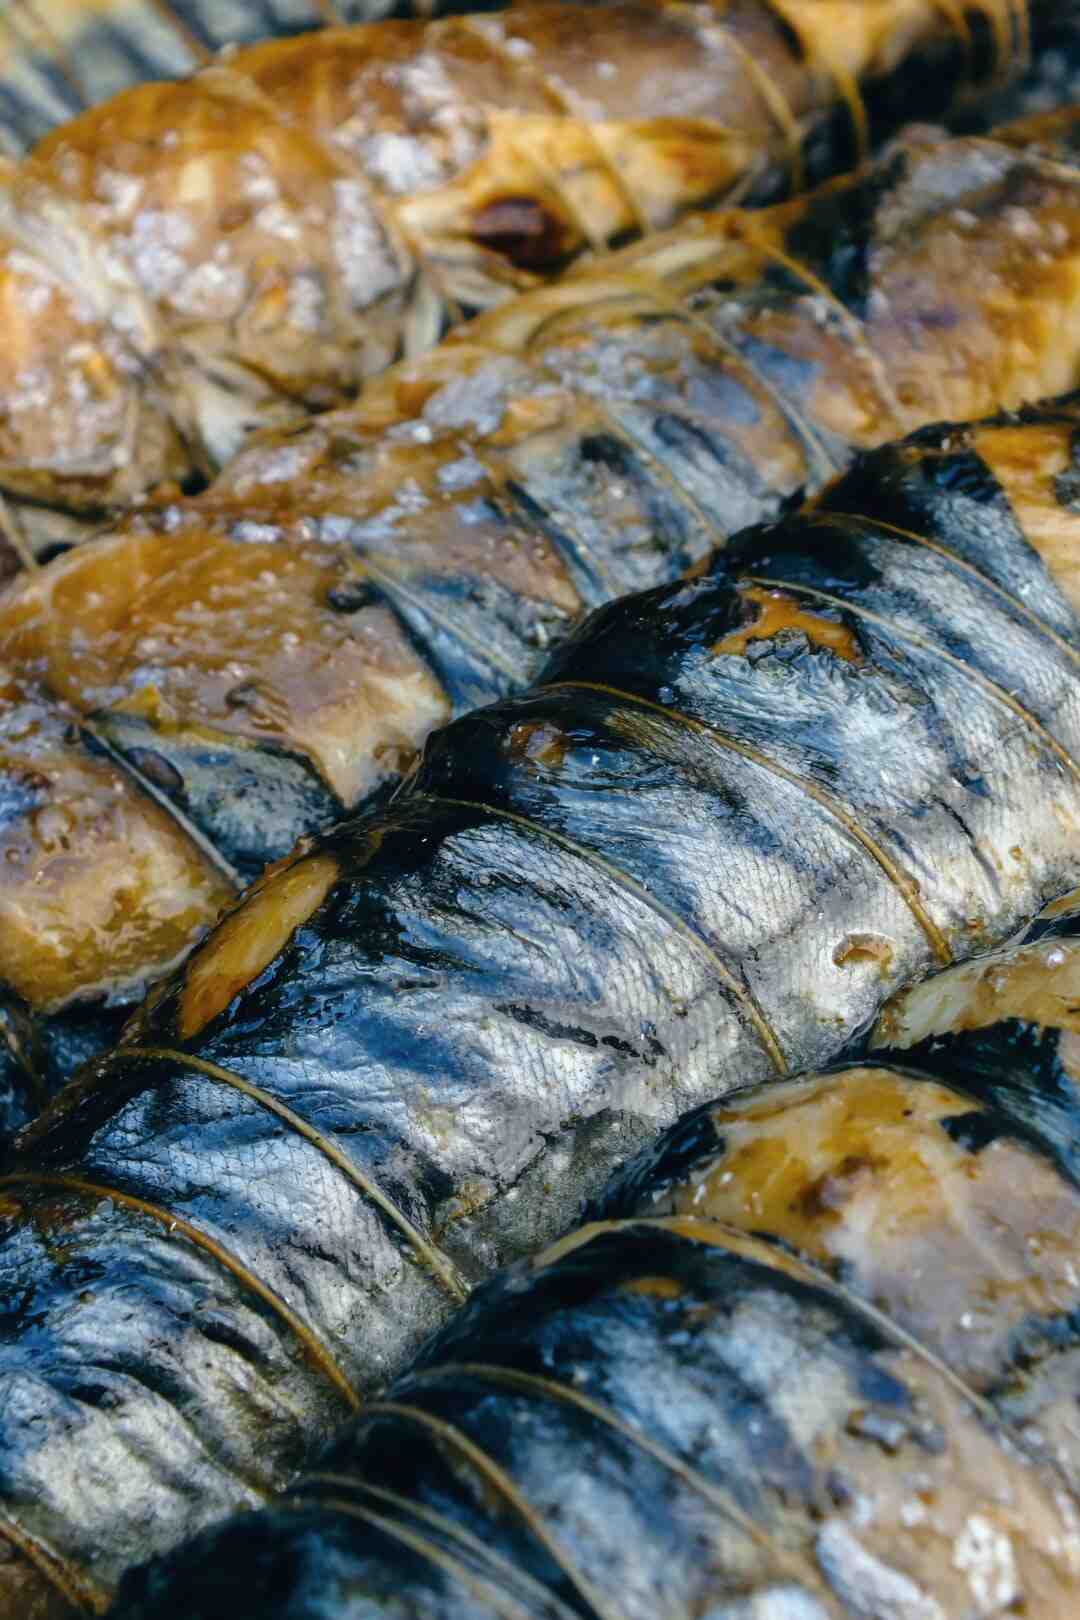 Quelle quantité de sardines par personne ?